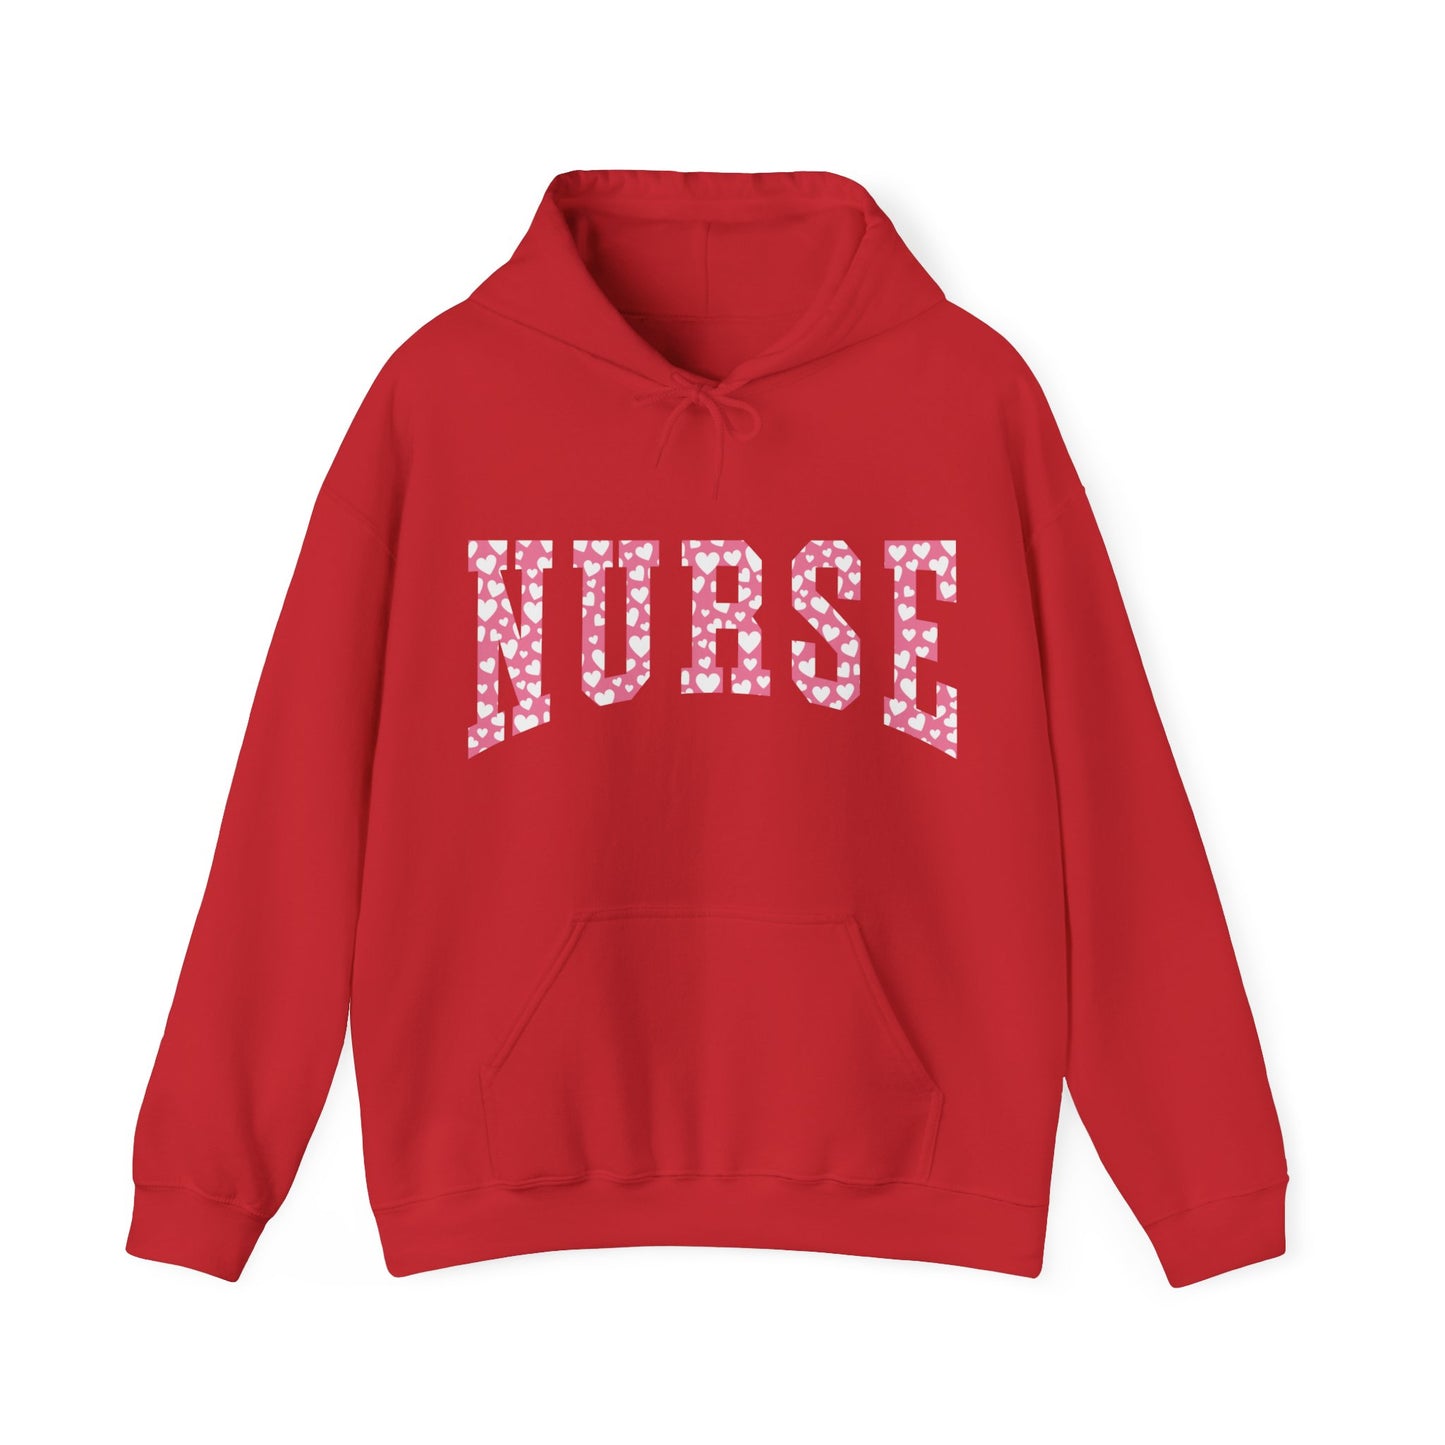 Nurse Hooded Sweatshirt